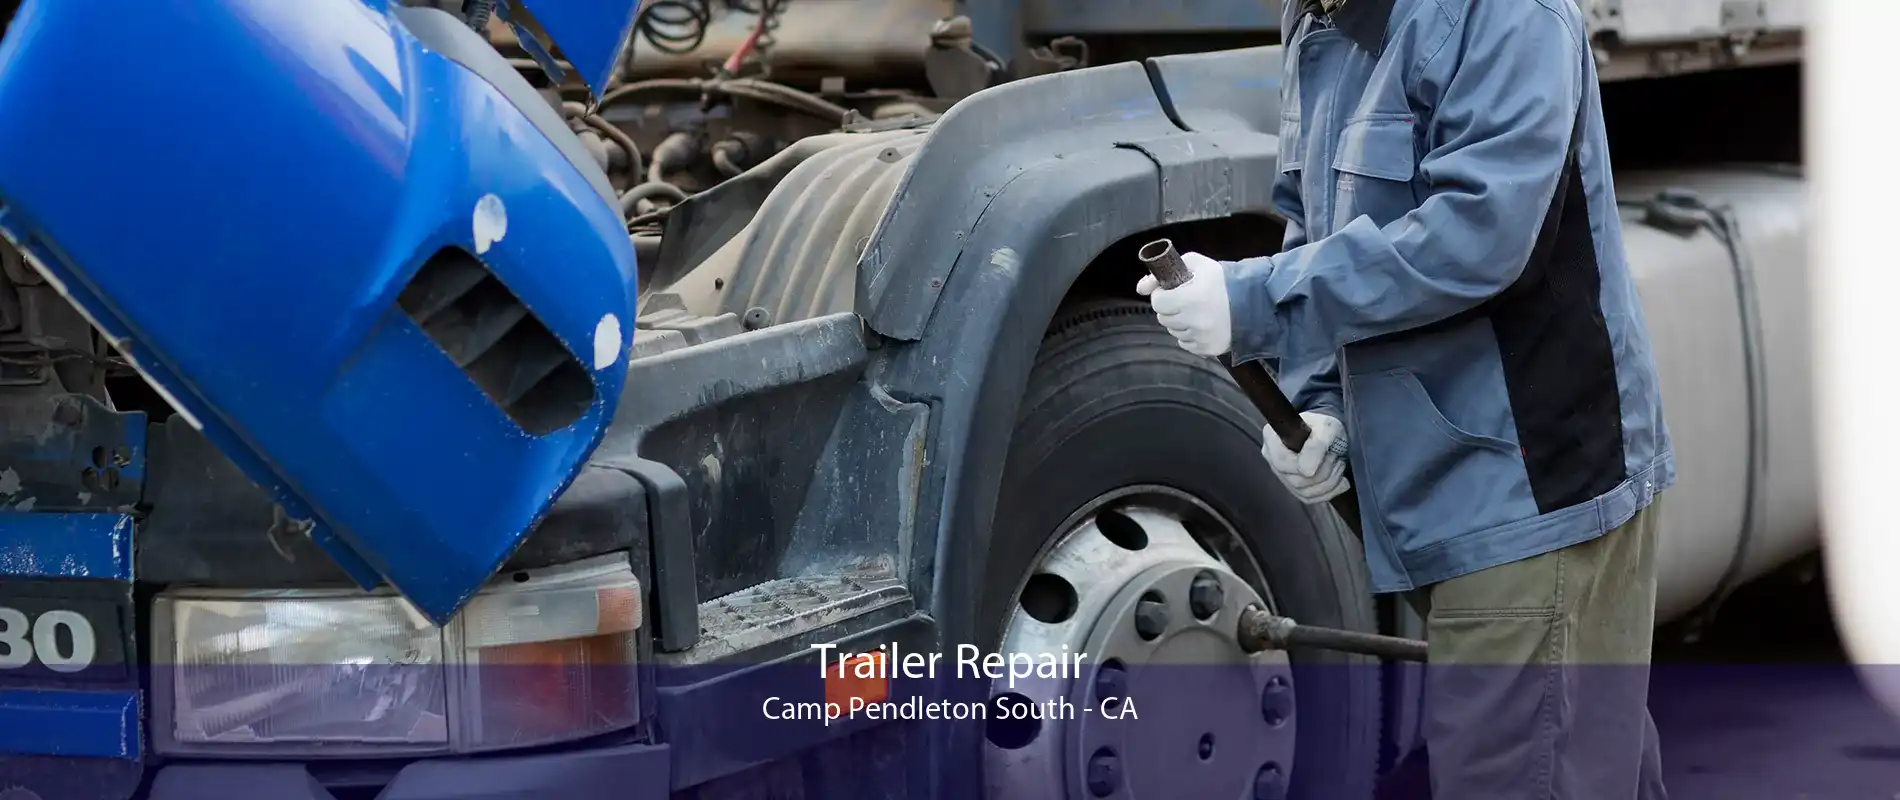 Trailer Repair Camp Pendleton South - CA